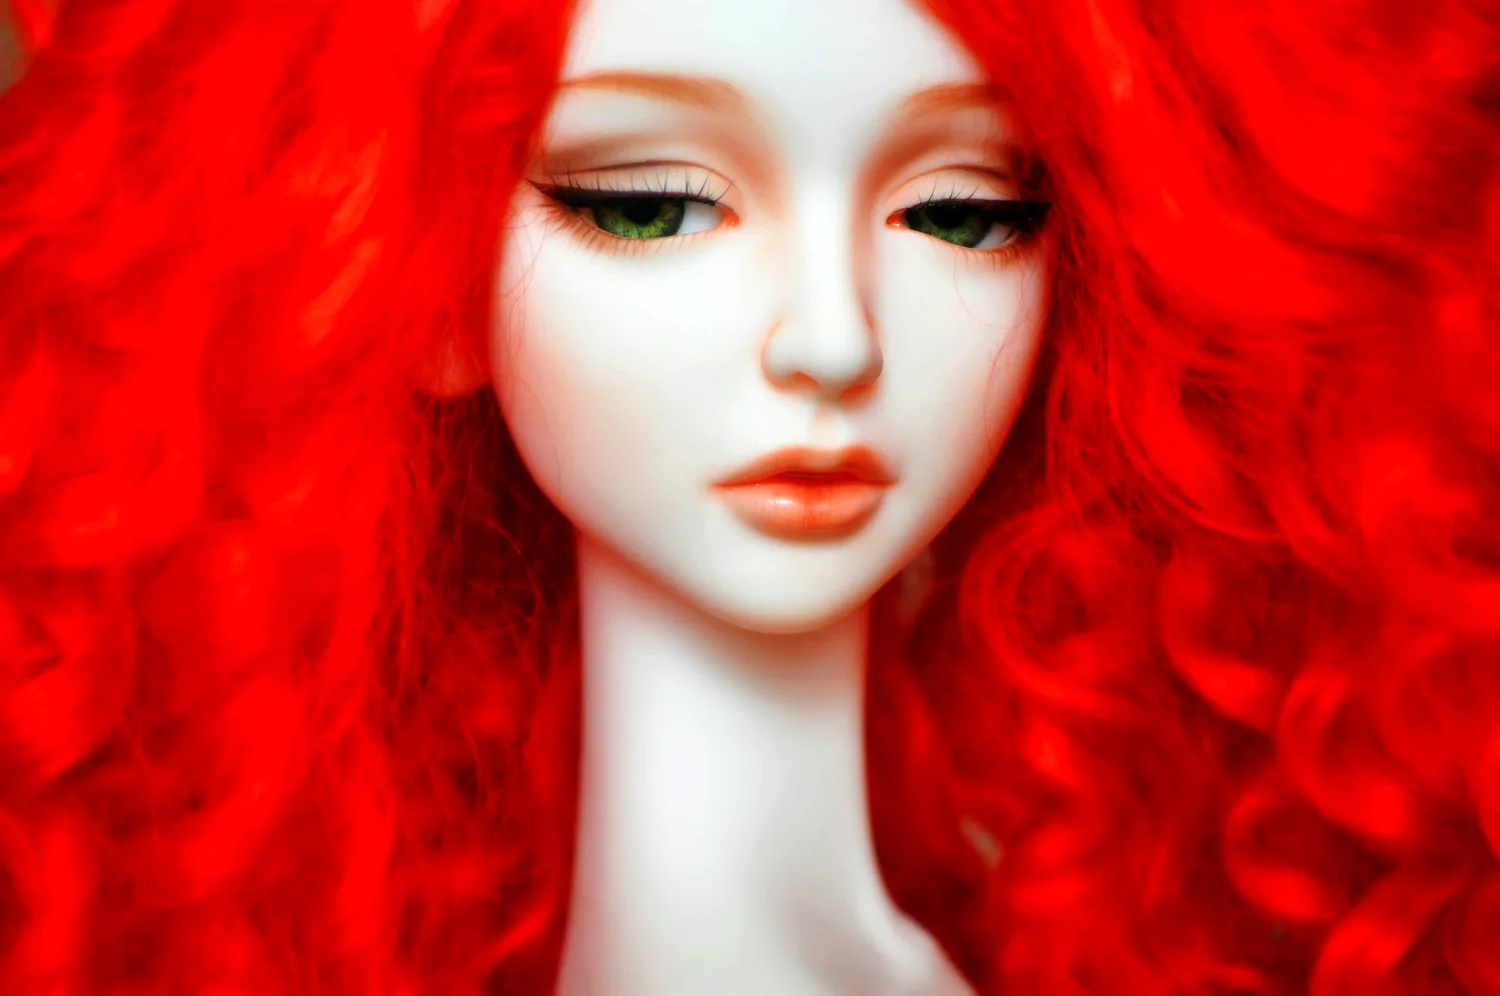 Кукла с рыжими волосами